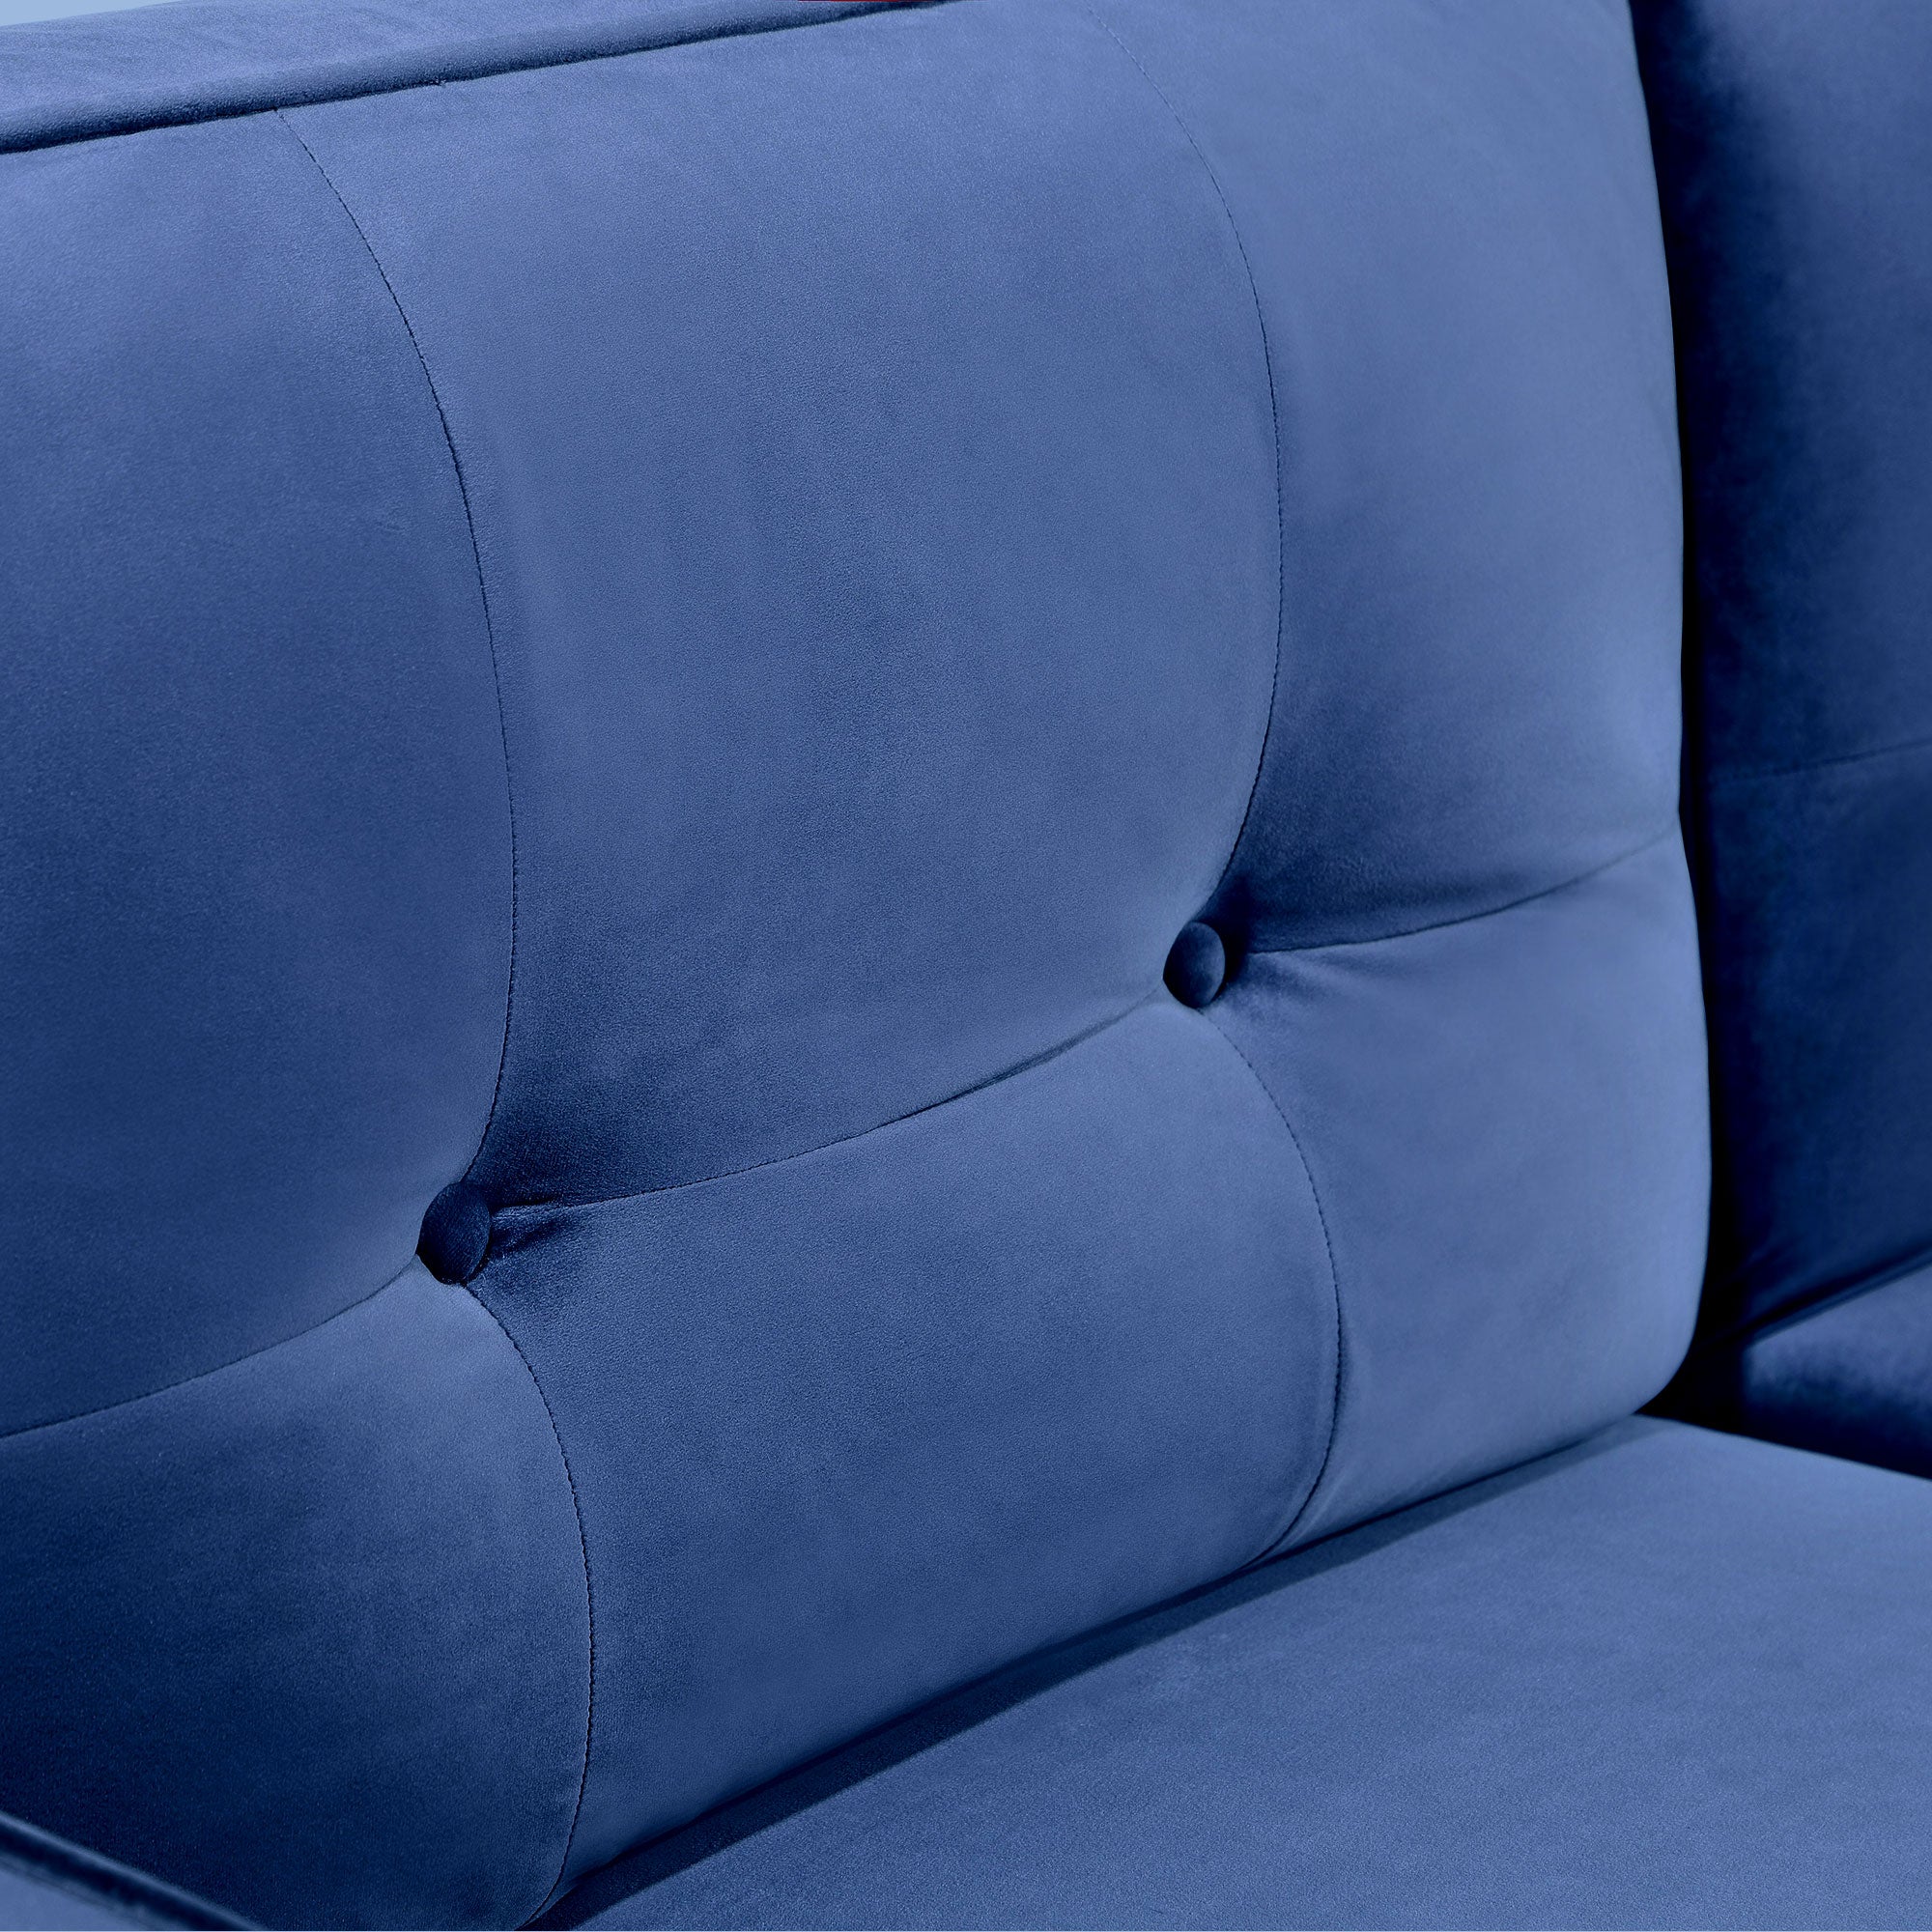 RaDEWAY 72" Tufted Velvet Upholstered Sofa Couch